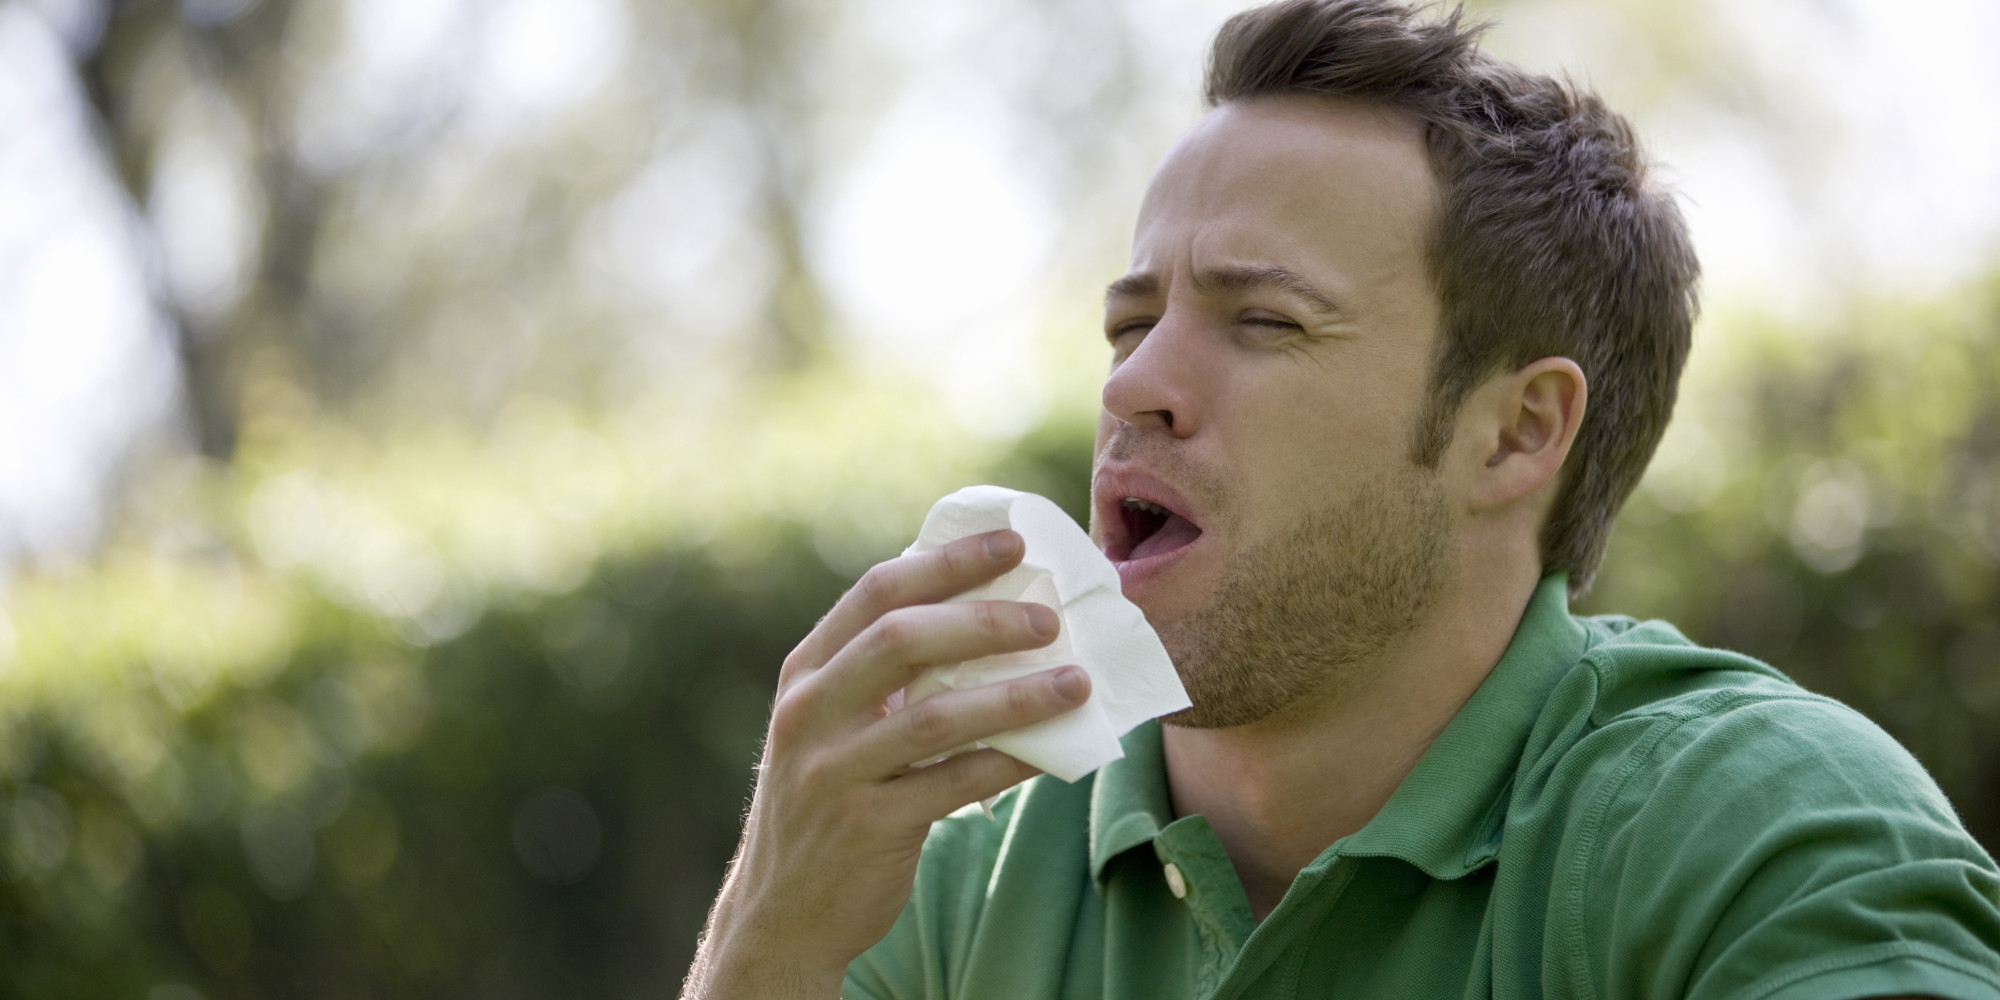 Проявления аллергии у взрослых6 кашель, насморк, ринит